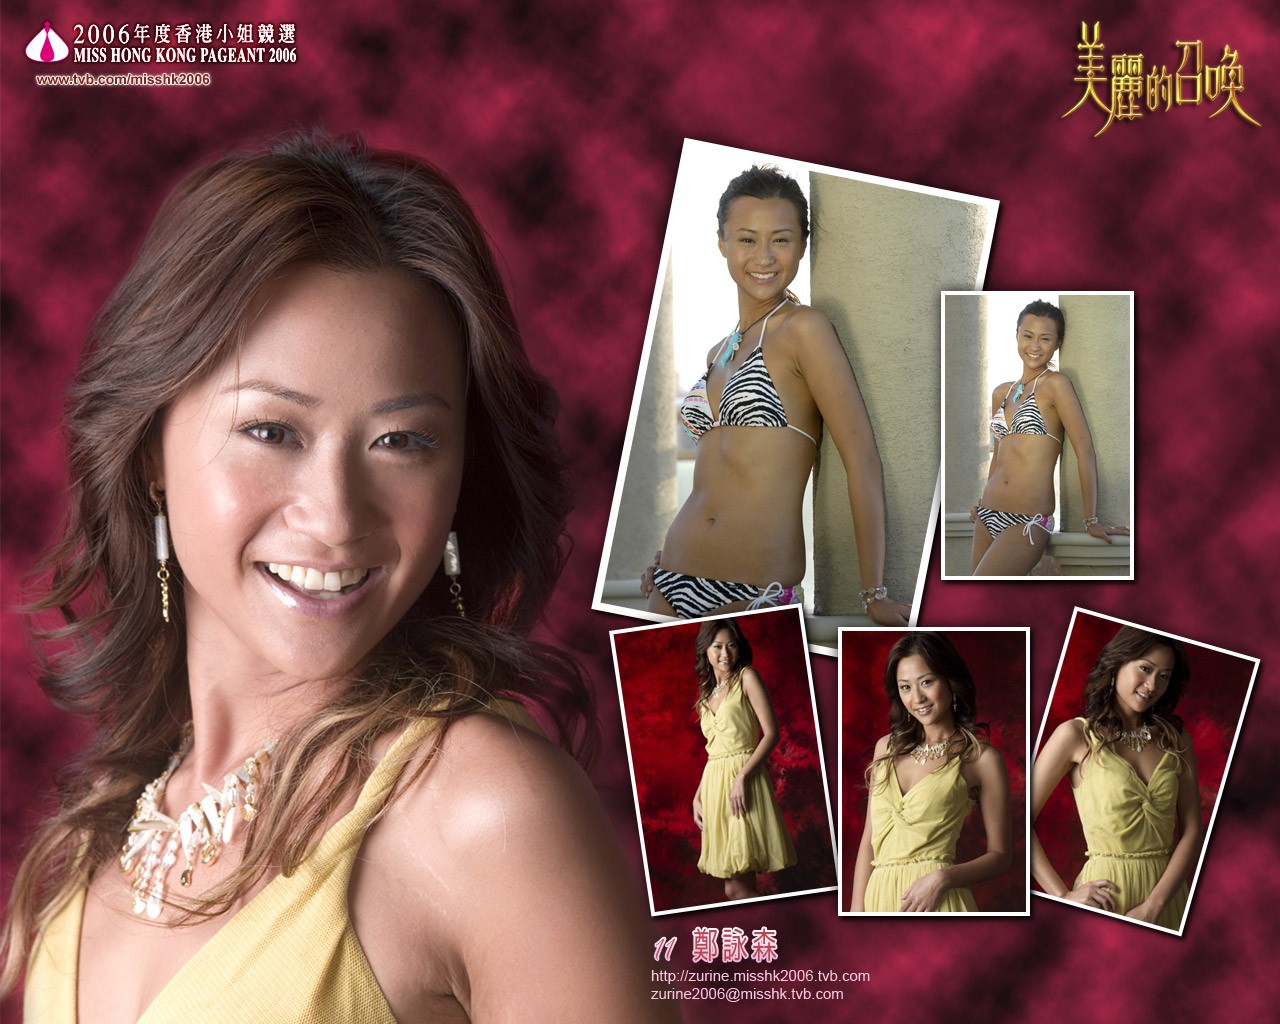 Miss Hong Kong 2006 Album #6 - 1280x1024